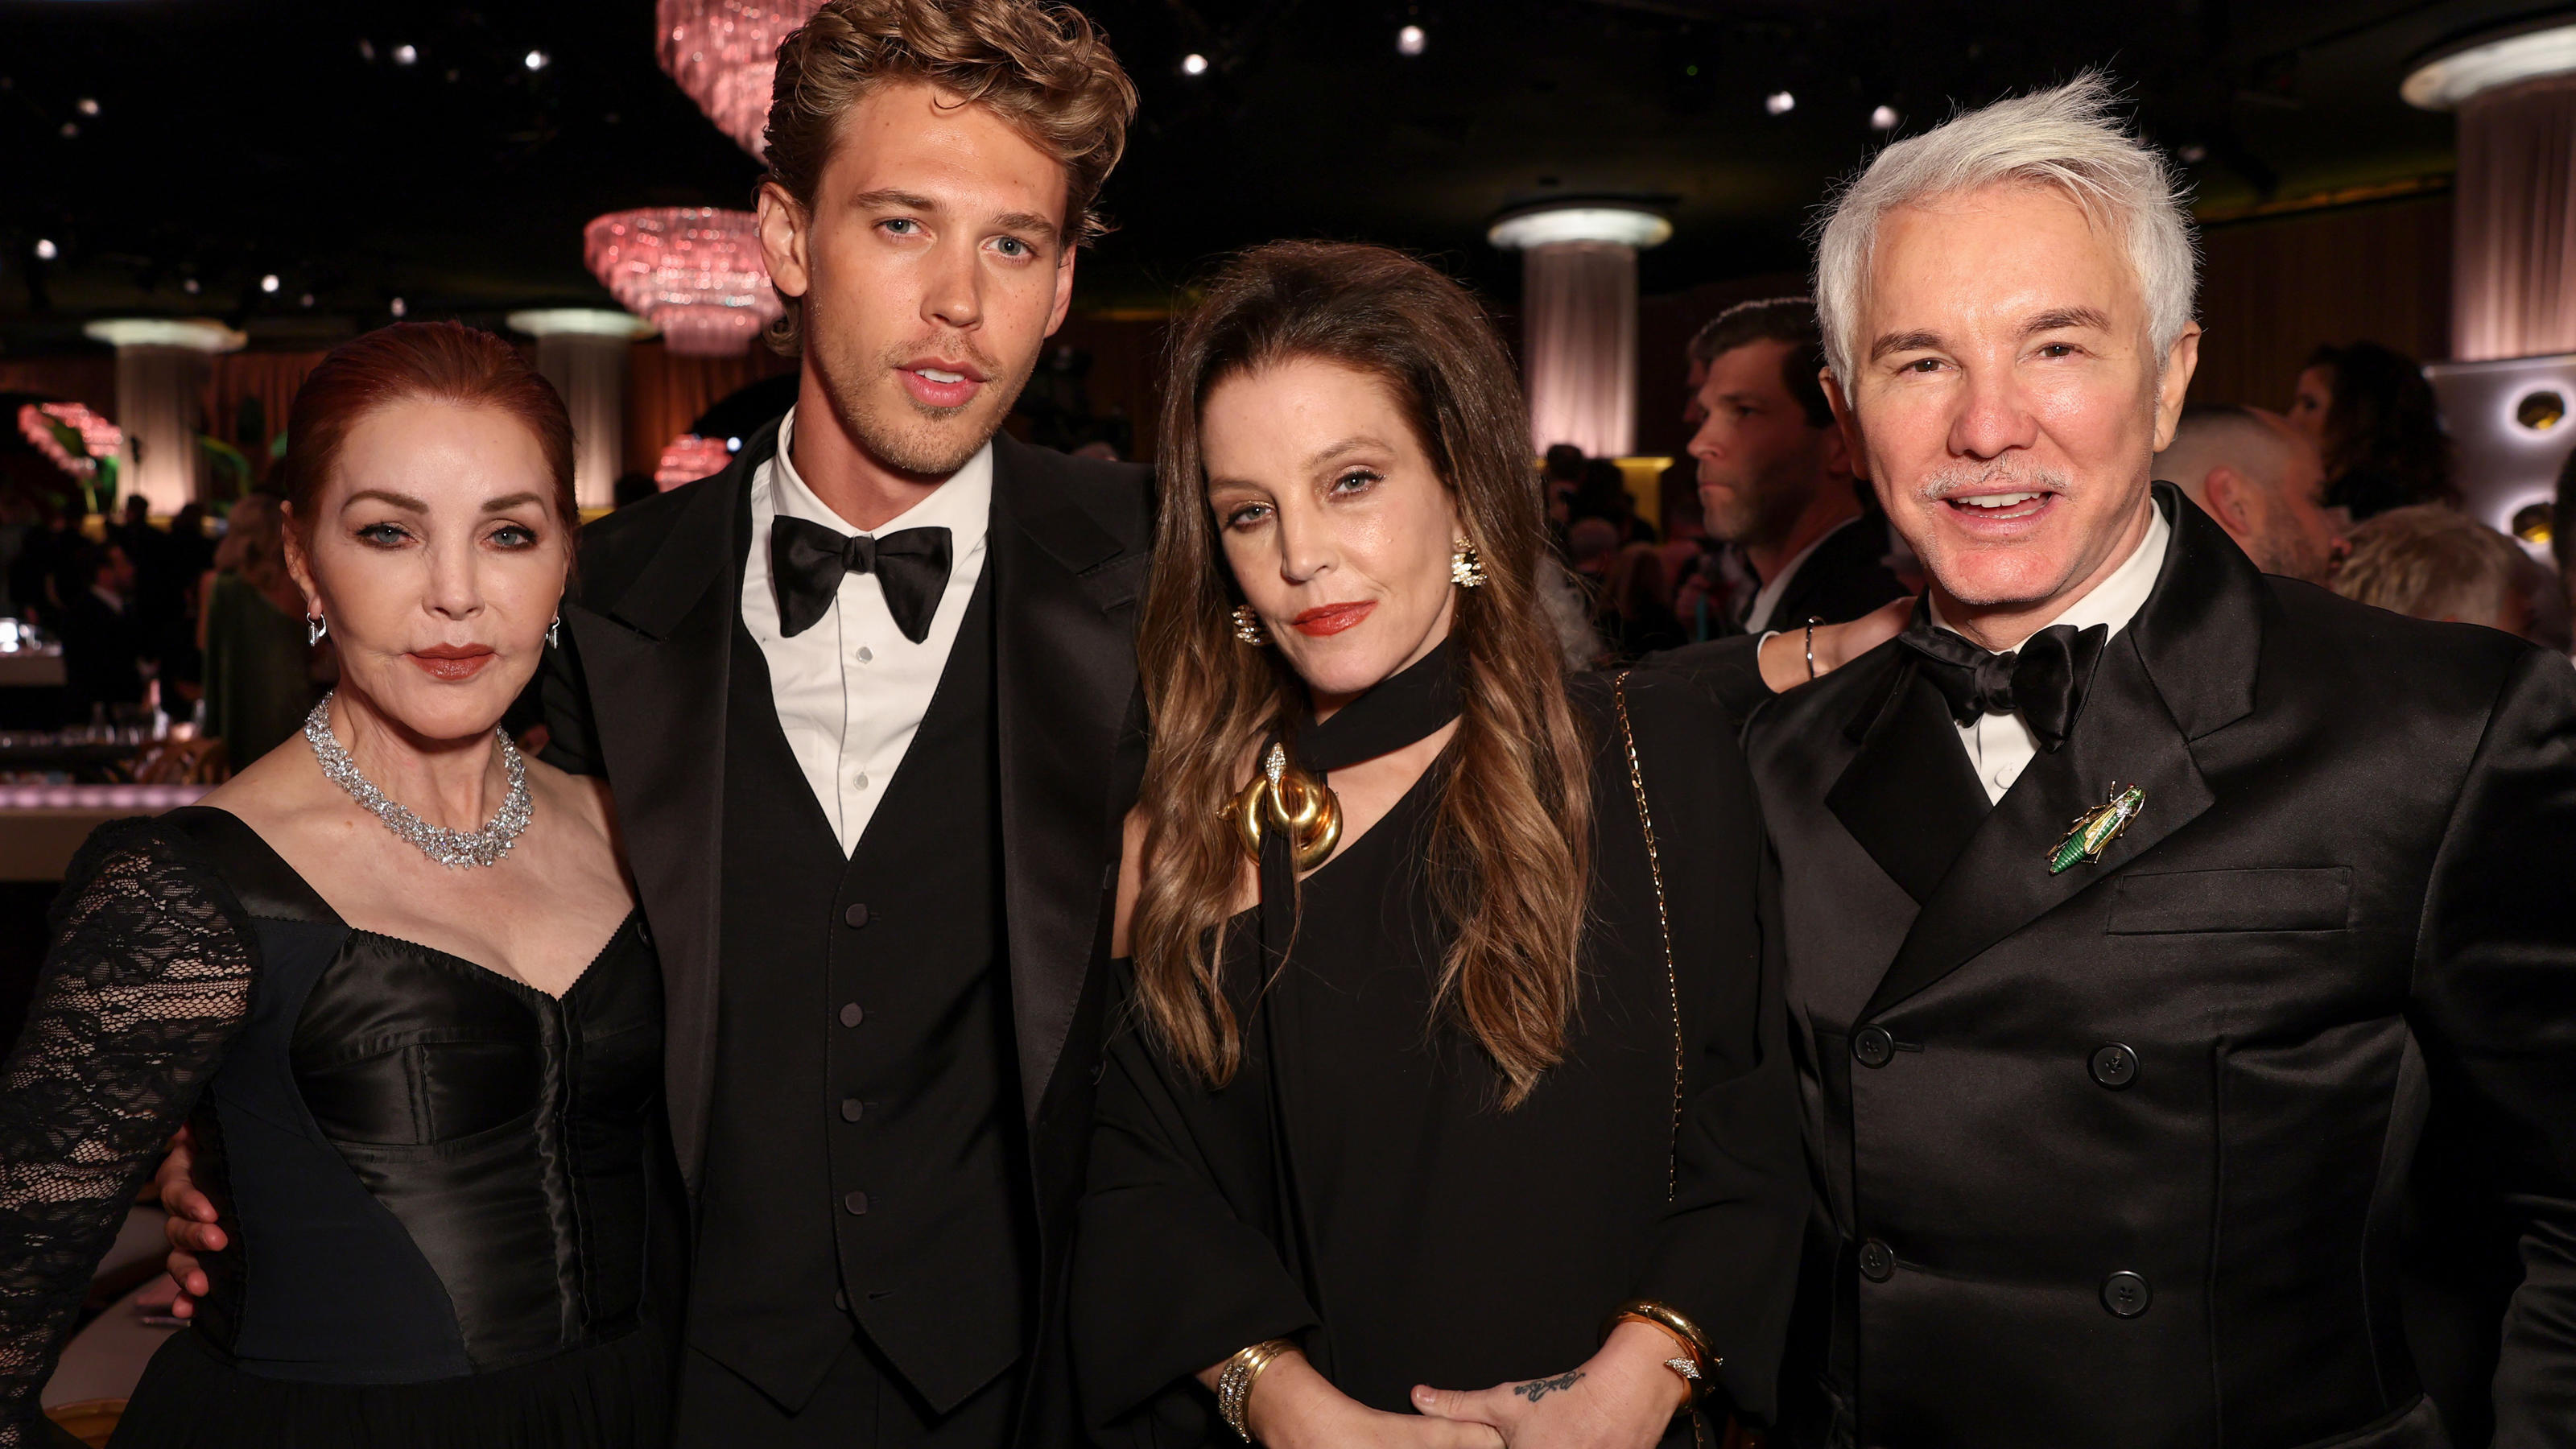 Am 10. Januar besuchten sie noch die Golden Globe Awards: Priscilla Presley, Austin Butler, Lisa Marie Presley und Baz Luhrmann in Beverly Hills.